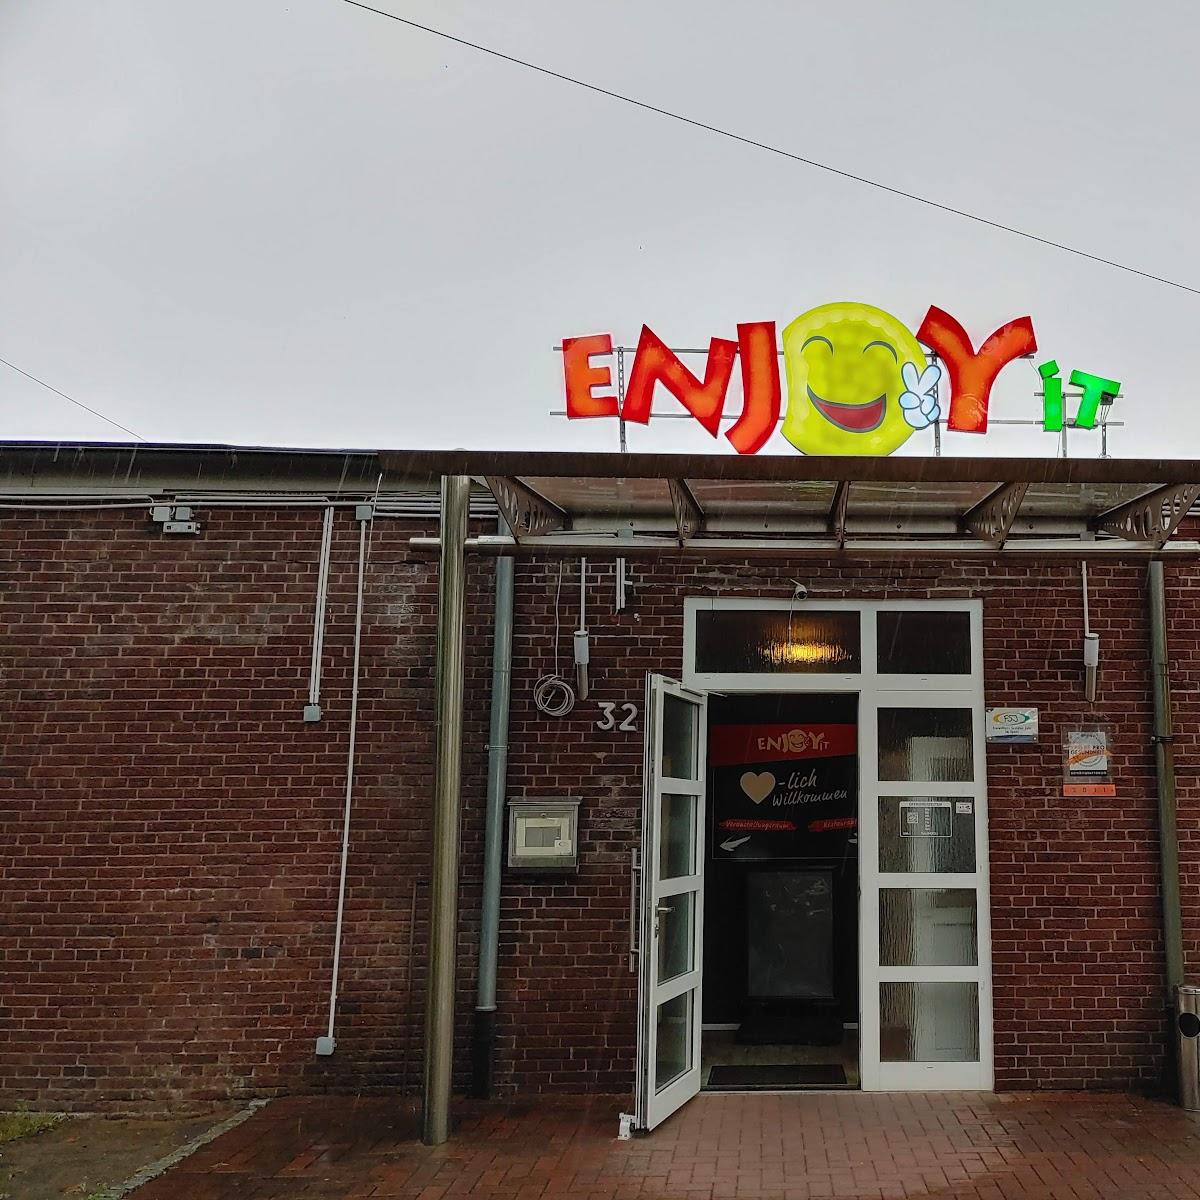 Restaurant "Enjoy It" in Neumünster